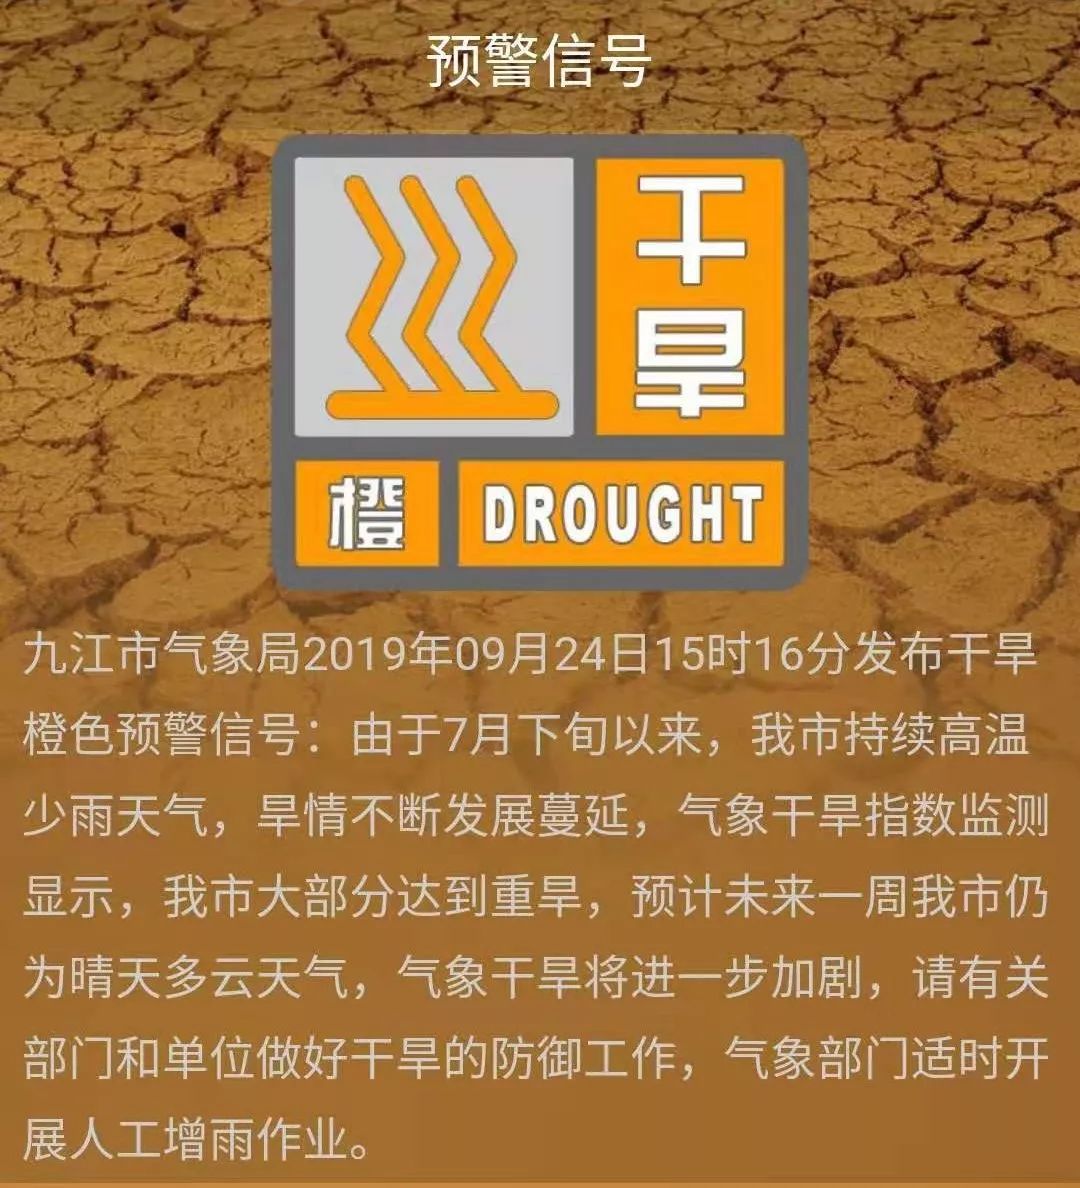 九江市发布干旱森林火险橙色预警天干物燥防火养生一定要知道